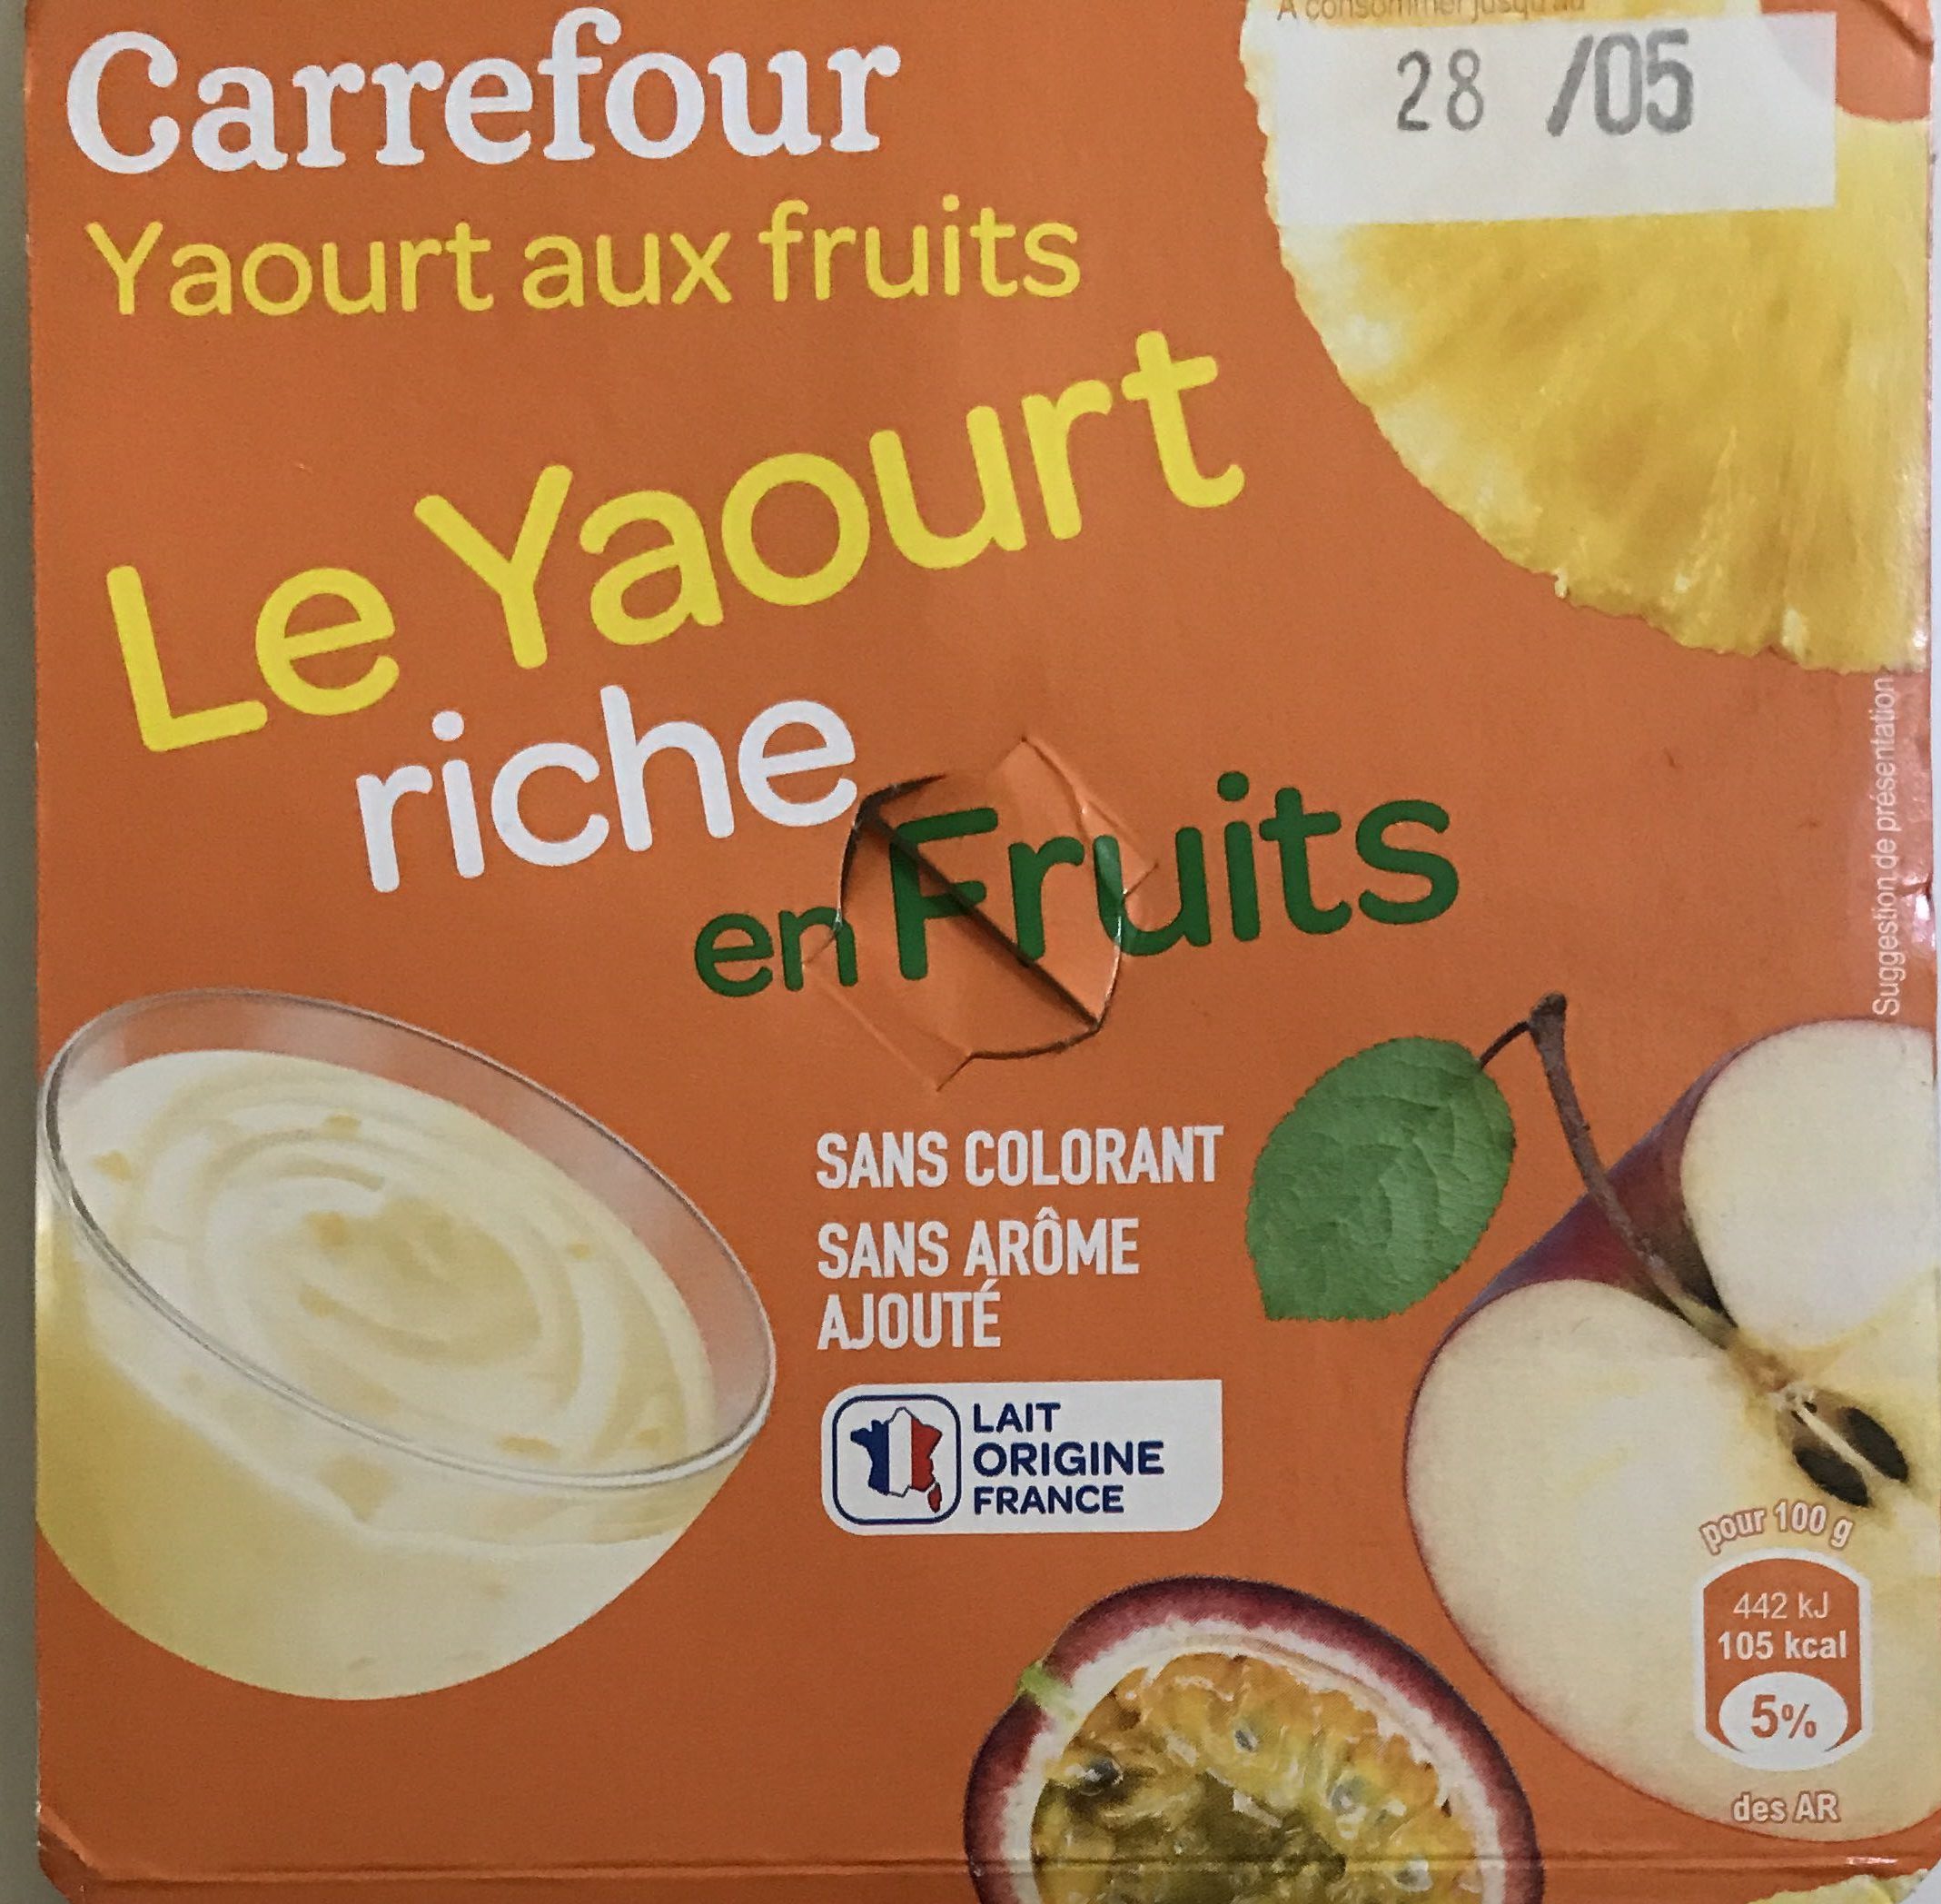 Le Yaourt riche en fruits - Product - fr